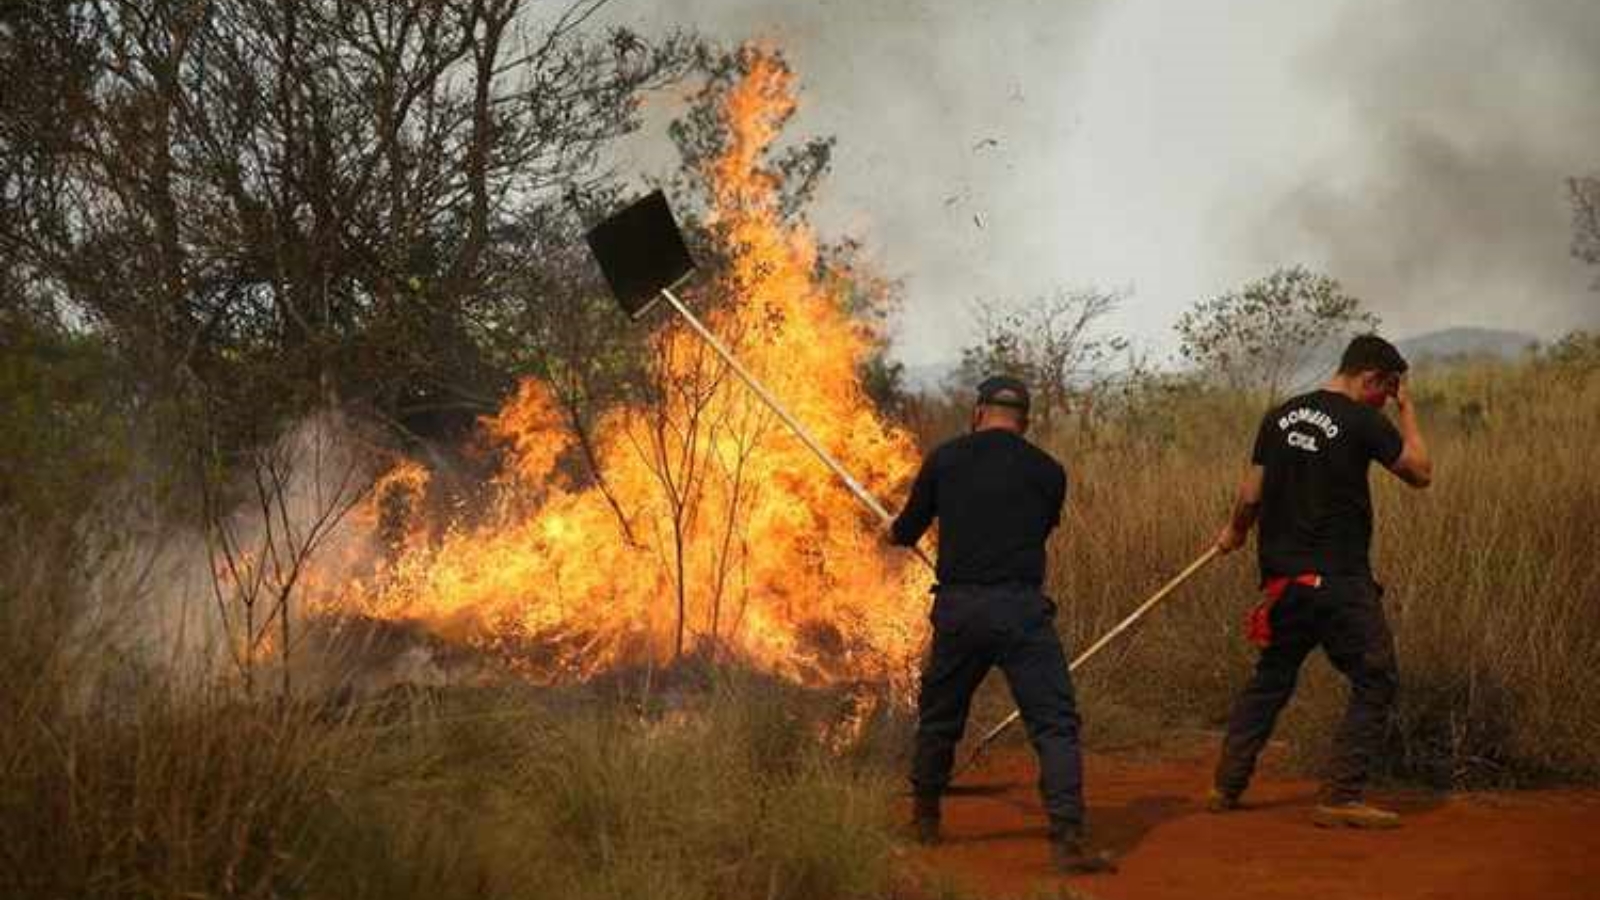 عناصر الإطفاء يشاركون في مكافحة الحريق في بارك جوكري، المحمية الطبيعية الواقعة على بُعد حوالى 50 كلم من مدينة ساو باولو. بتاريخ 23 آب/ أغسطس 2021